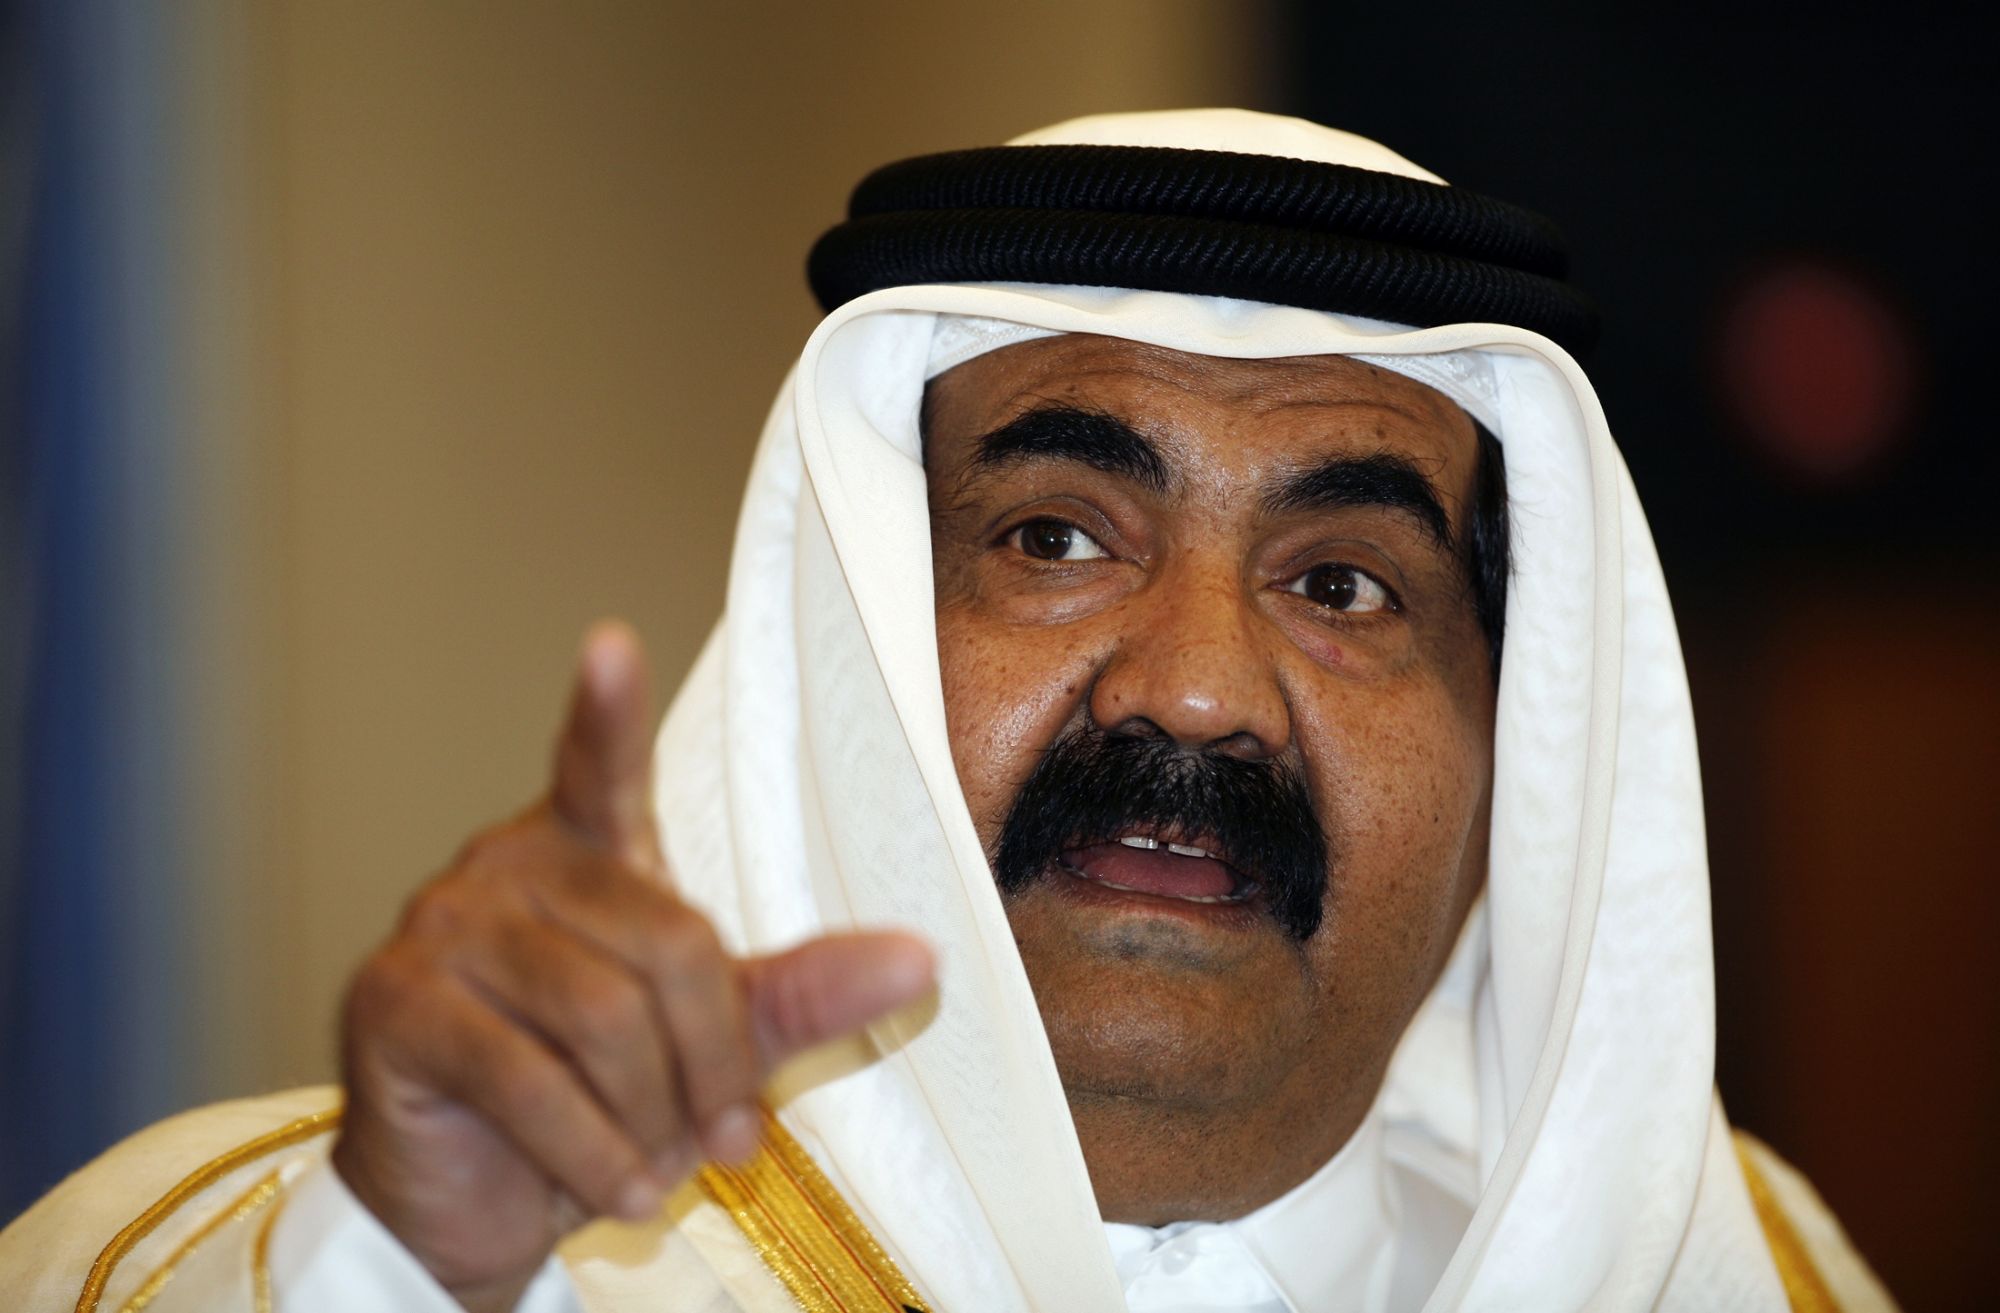 امير قطر السابق تدخل شخصيا لاطلاق سراح خالد شيخ محمد في 1996